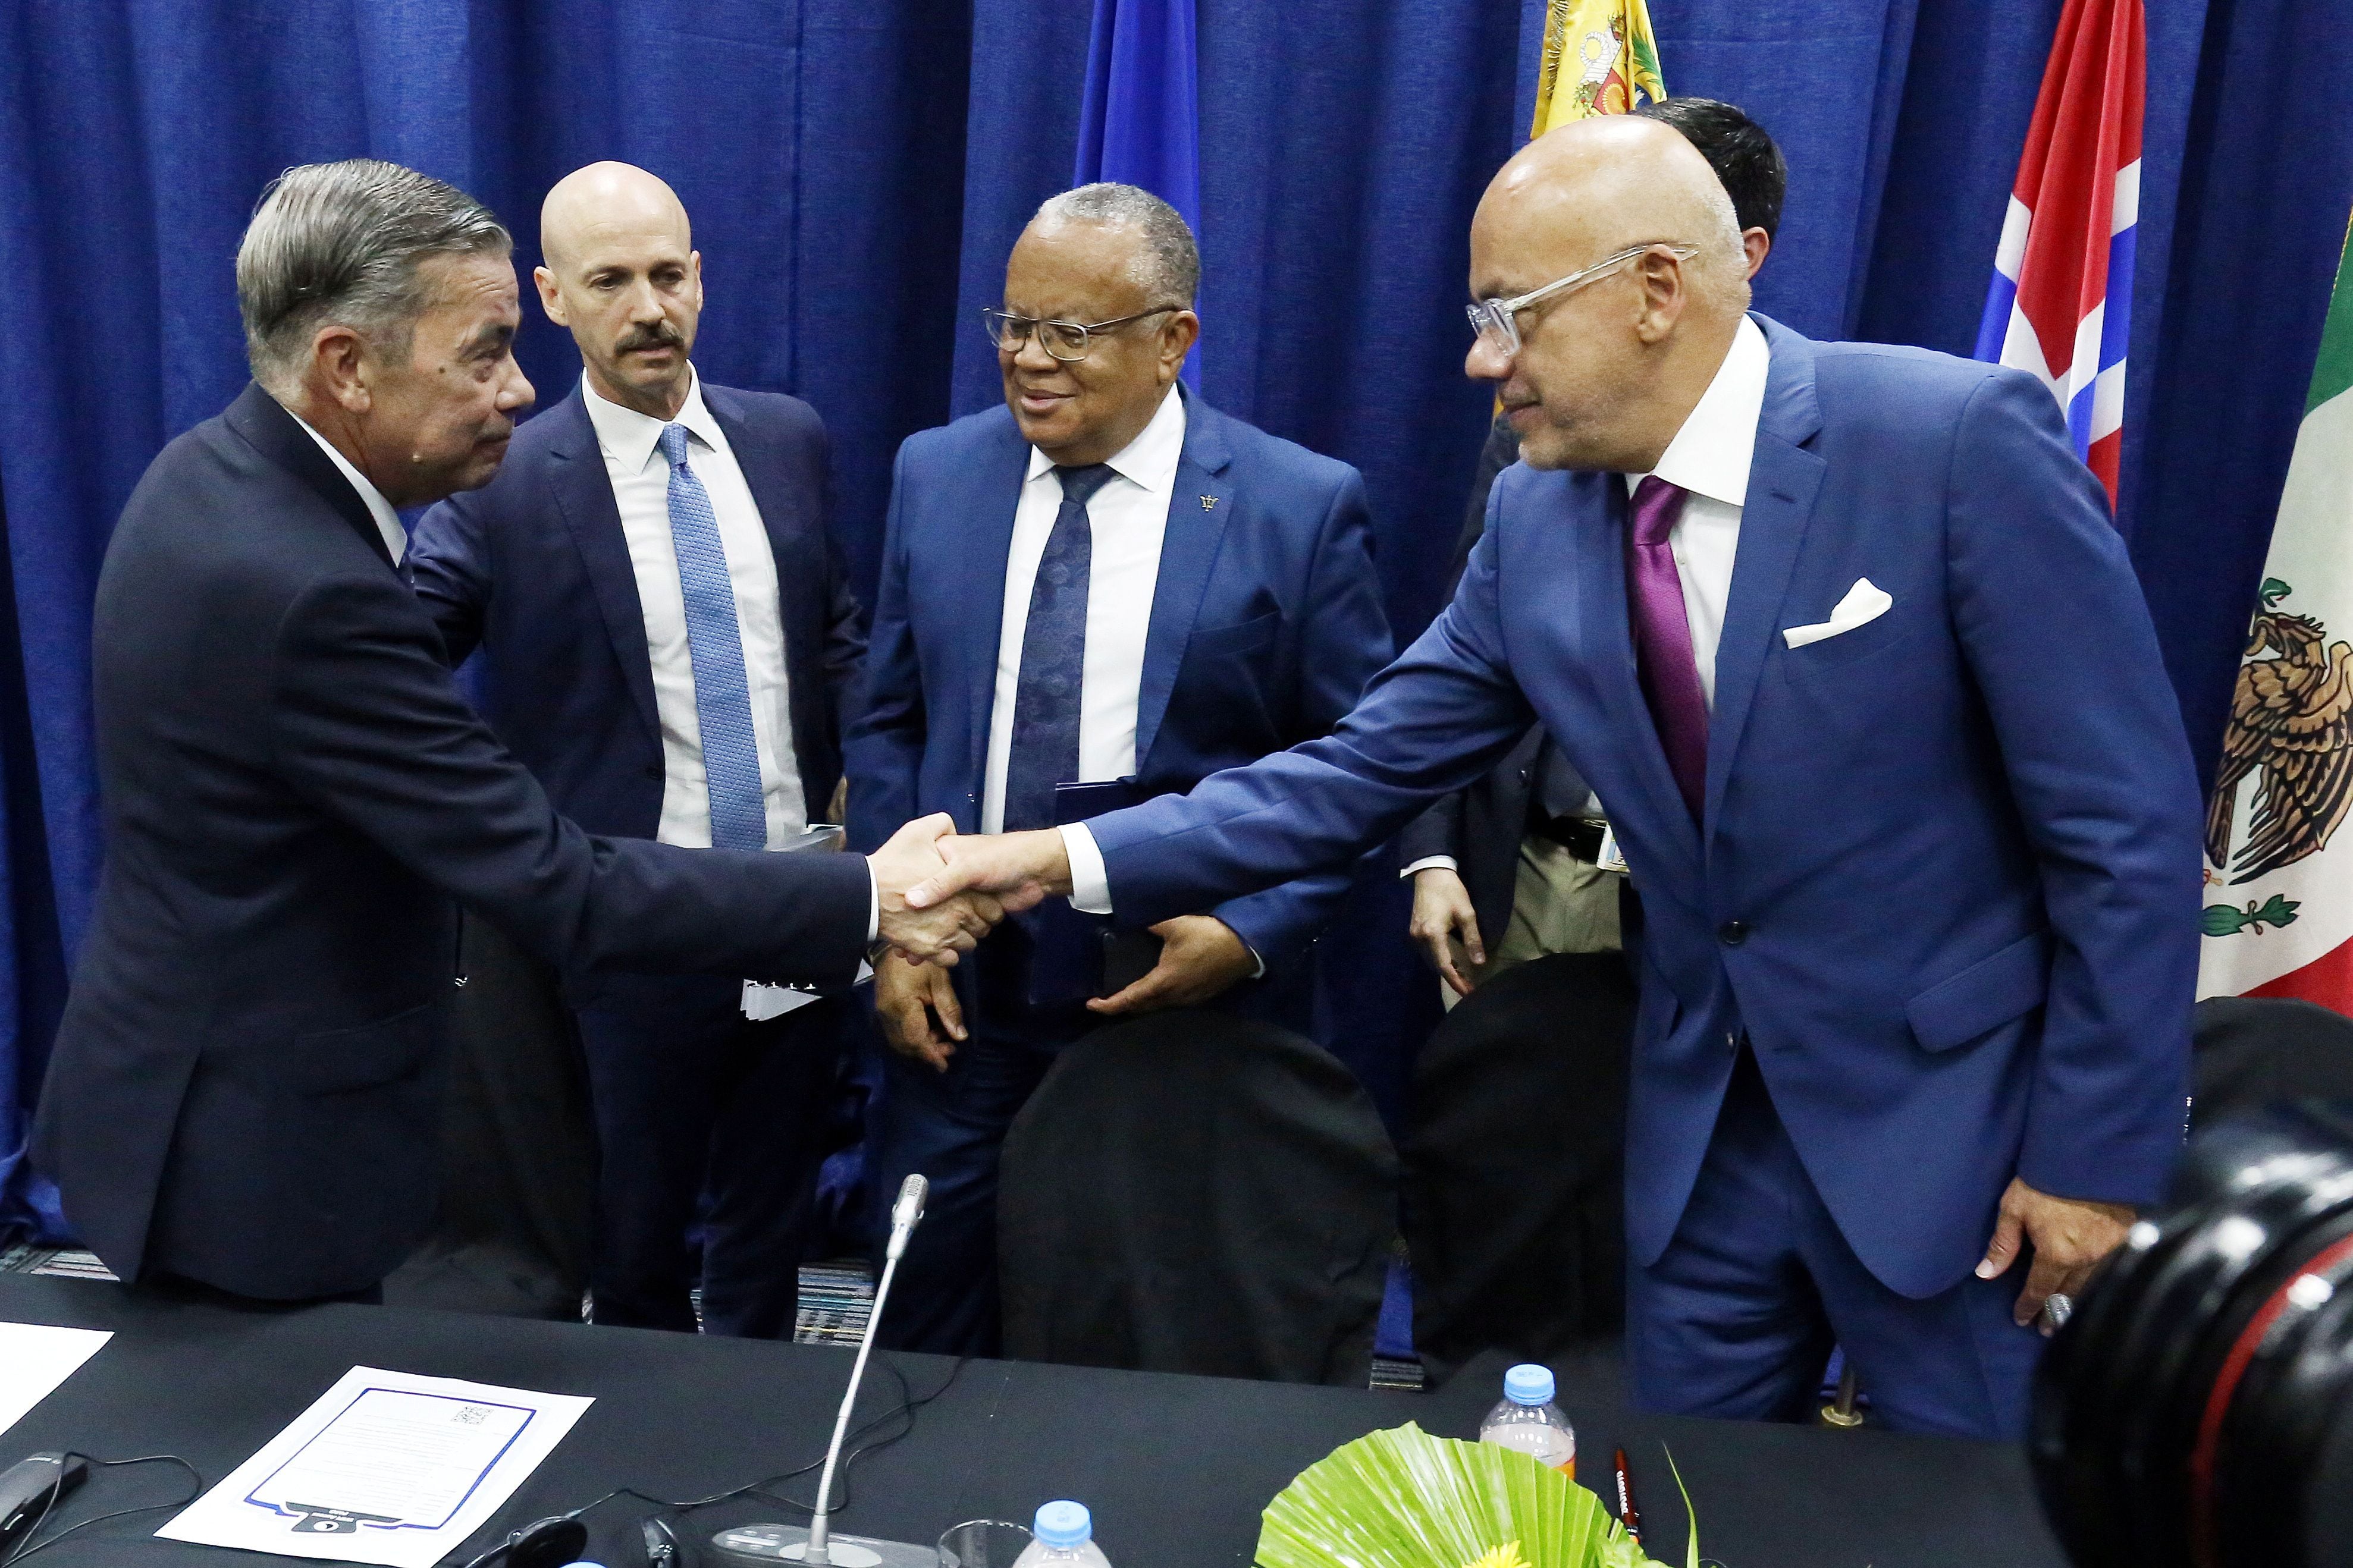 Gerardo Blyde le da la mano a Jorge Rodriguez tras la firma de los acuerdos entre la oposición y el régimen de Venezuela en Barbados (REUTERS/Nigel R. Browne/Nu-Image Digital Media)